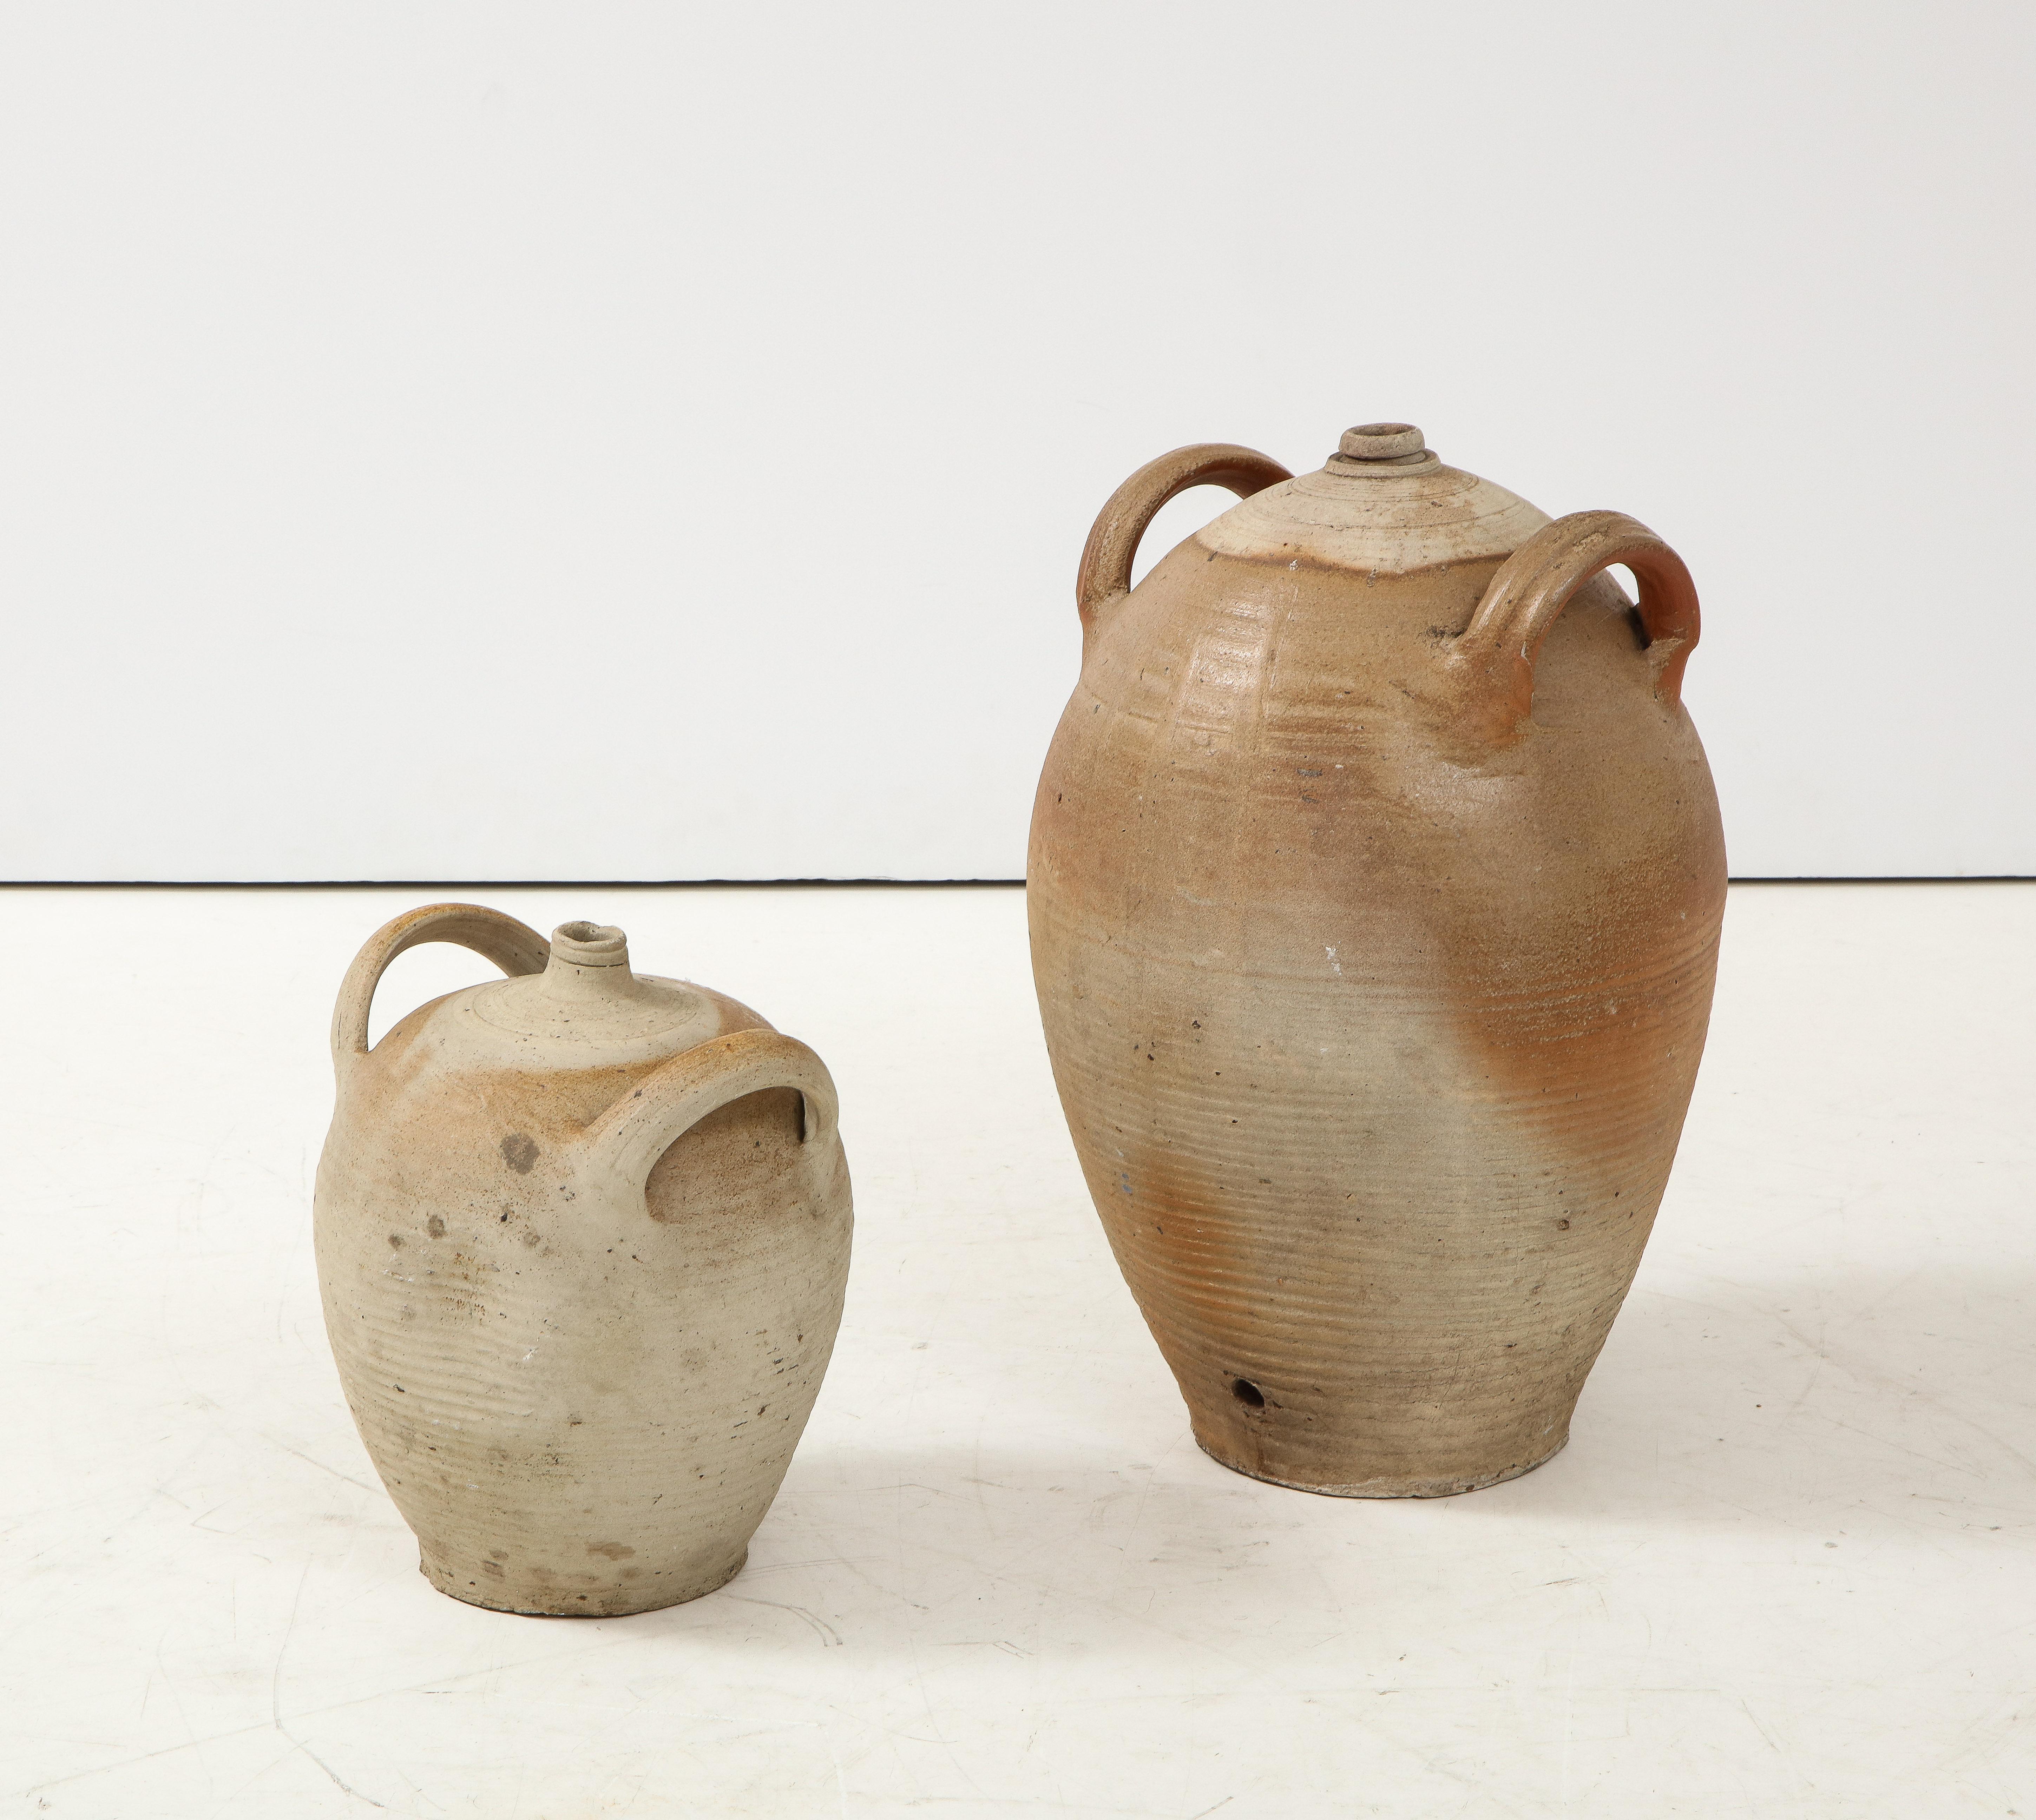 French Provincial Stoneware Vintage Pottery Oil Jar, Jug, Vase or Vessel 4